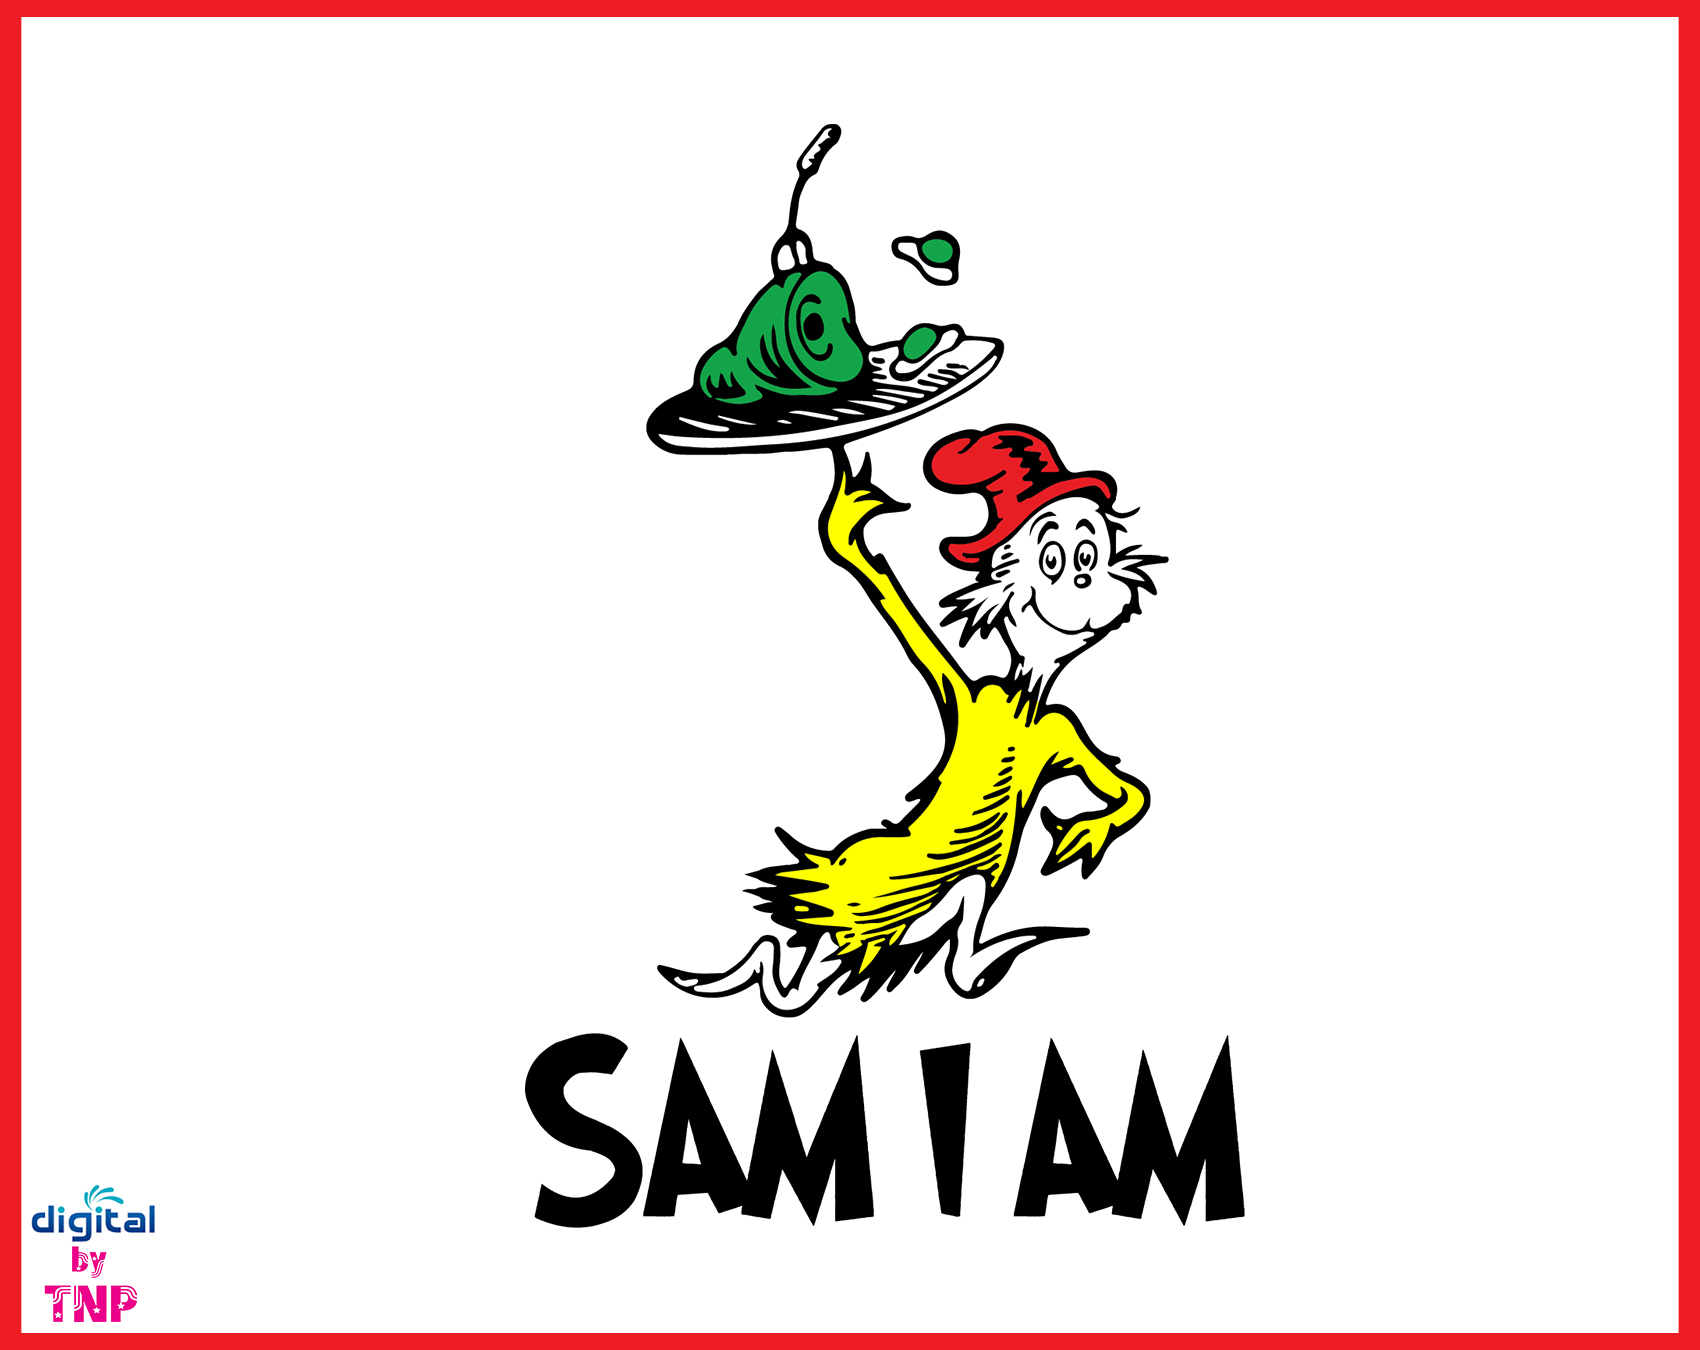 B, sam i am SVG, Dr Seuss 2020 svg, png, dxf, eps, pdf Customer